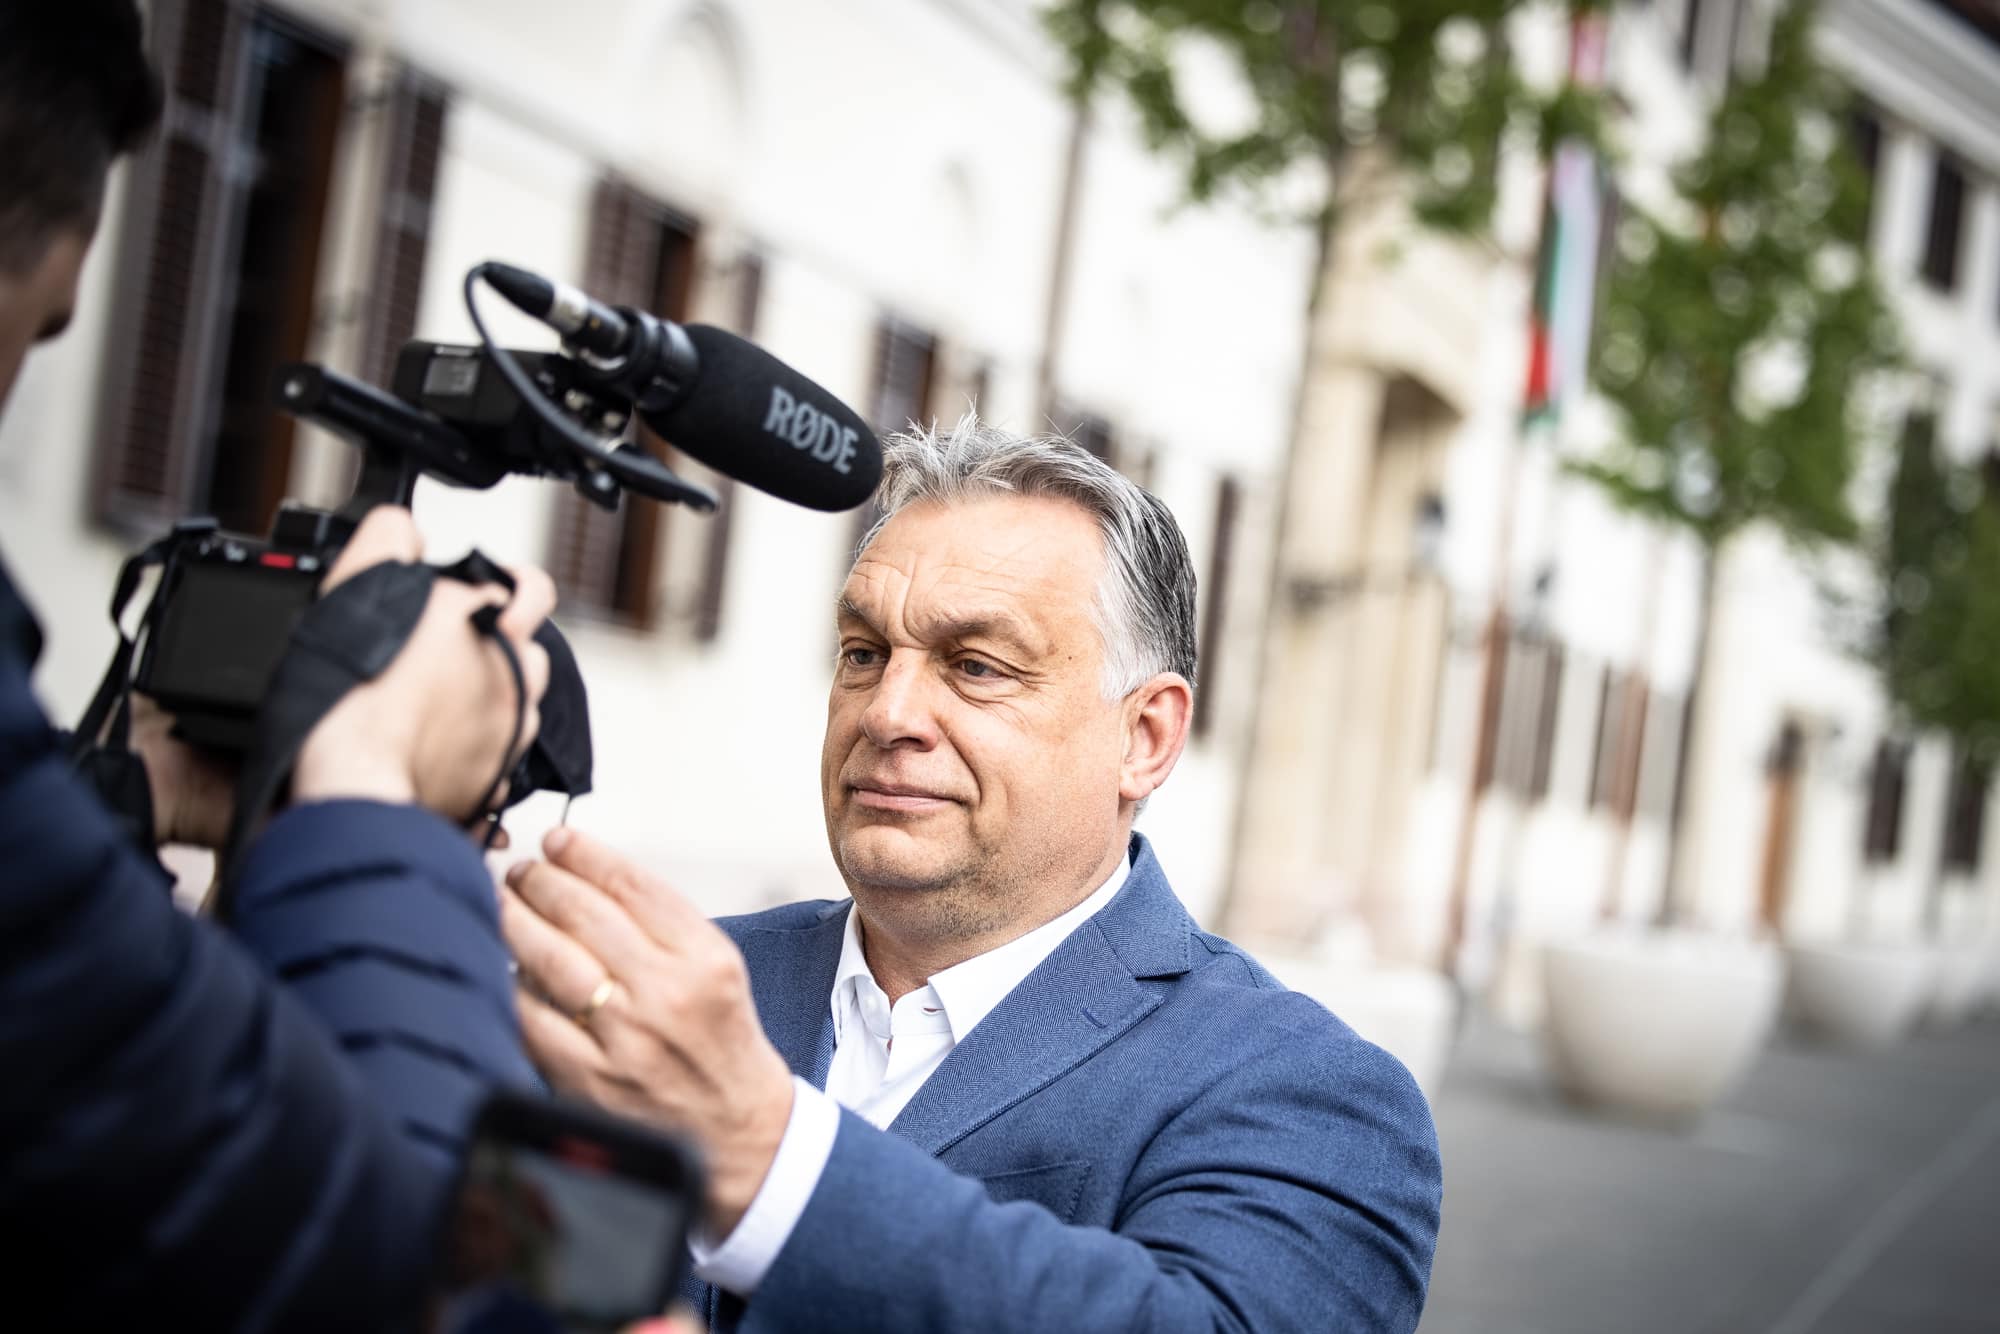 Orbán mit Kamera